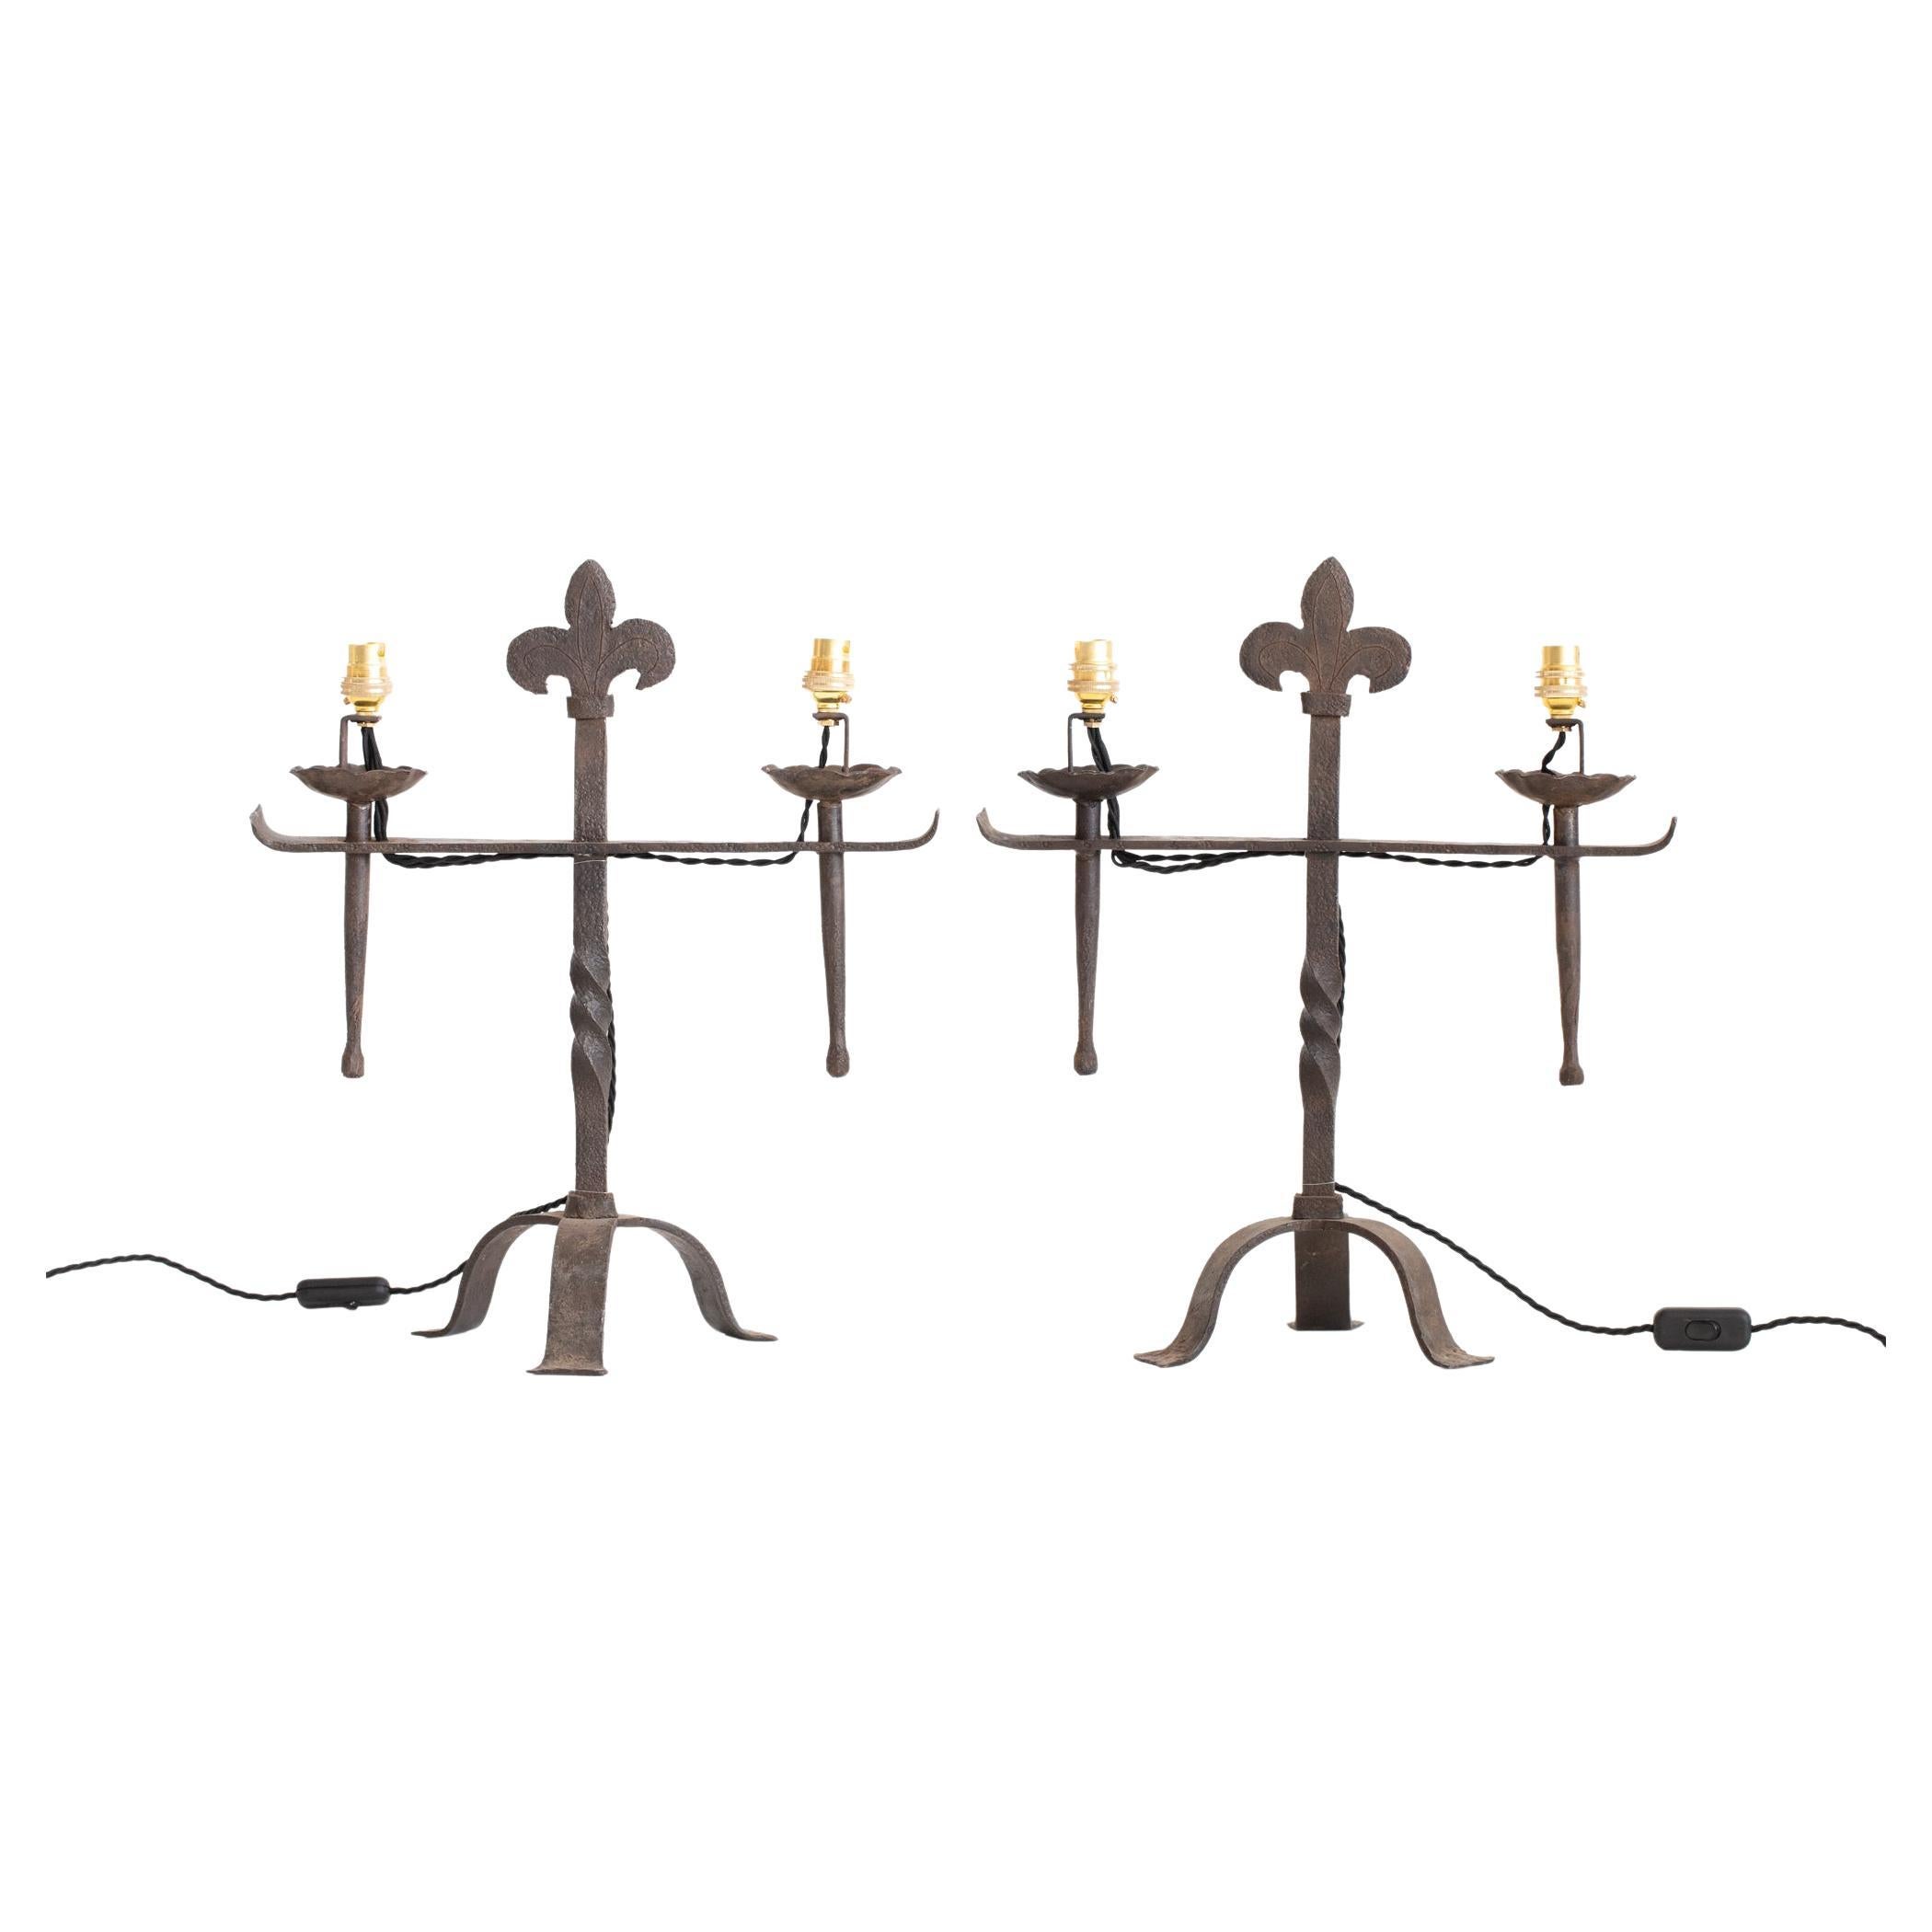 Lampes de table en fer forgé français datant d'environ 1870